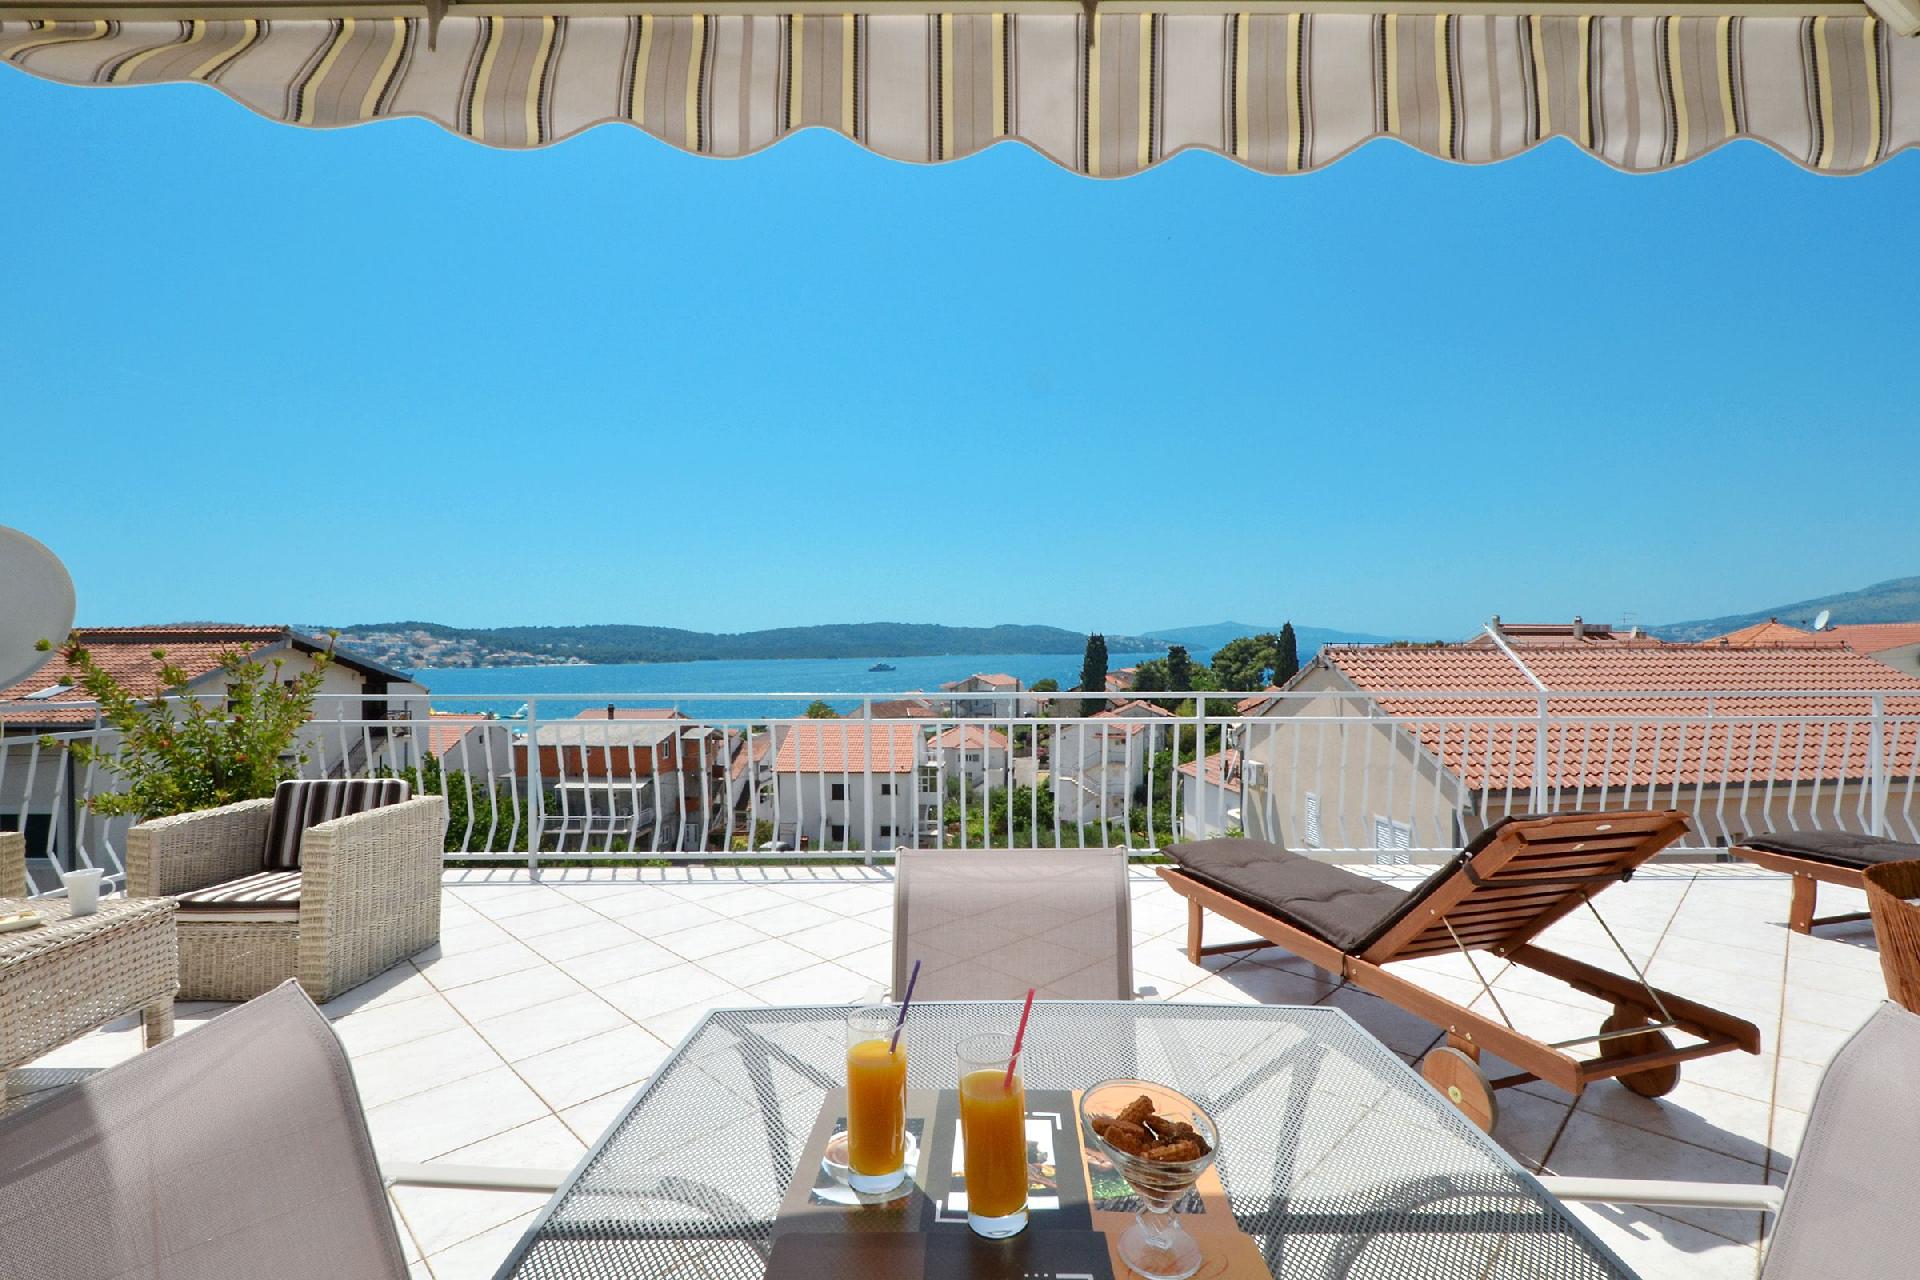 Ferienwohnung mit großer Terrasse, zwei Balk Ferienwohnung in Kroatien